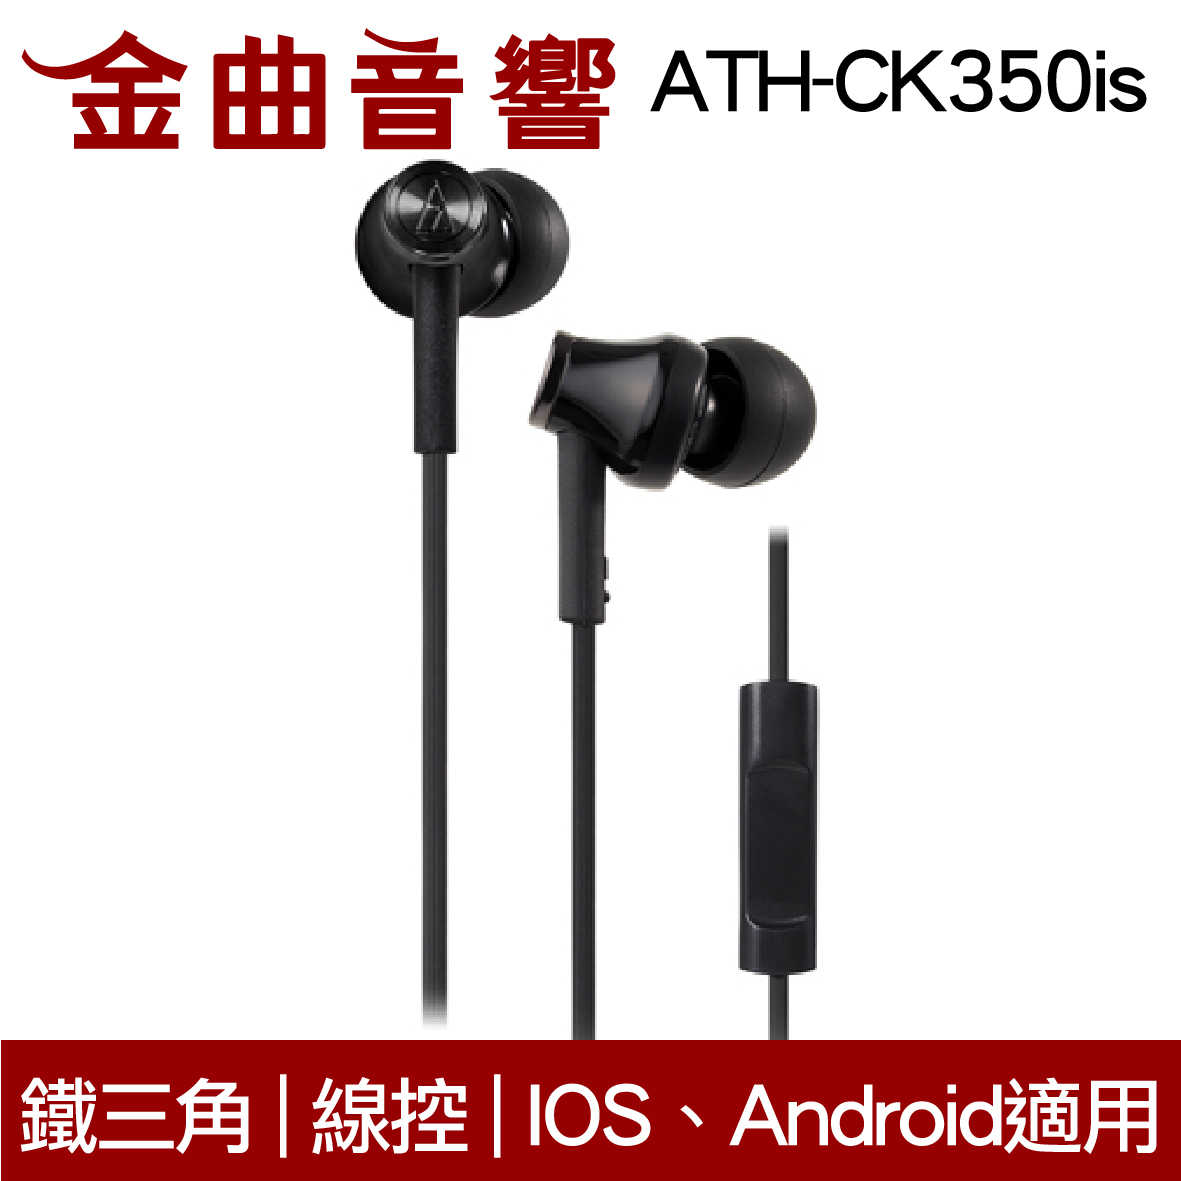 鐵三角 ATH-CK350iS 深藍色 線控耳道式耳機 IPhone IOS安卓 適用 | 金曲音響